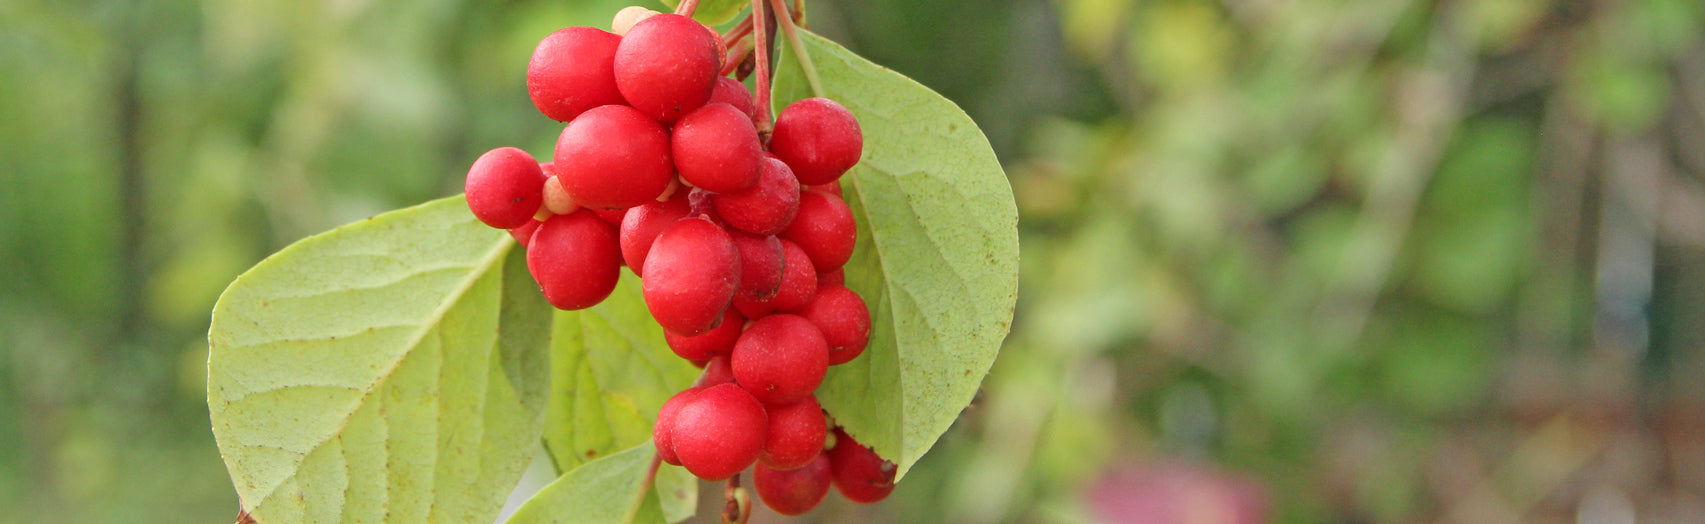 fresh schisandra berries